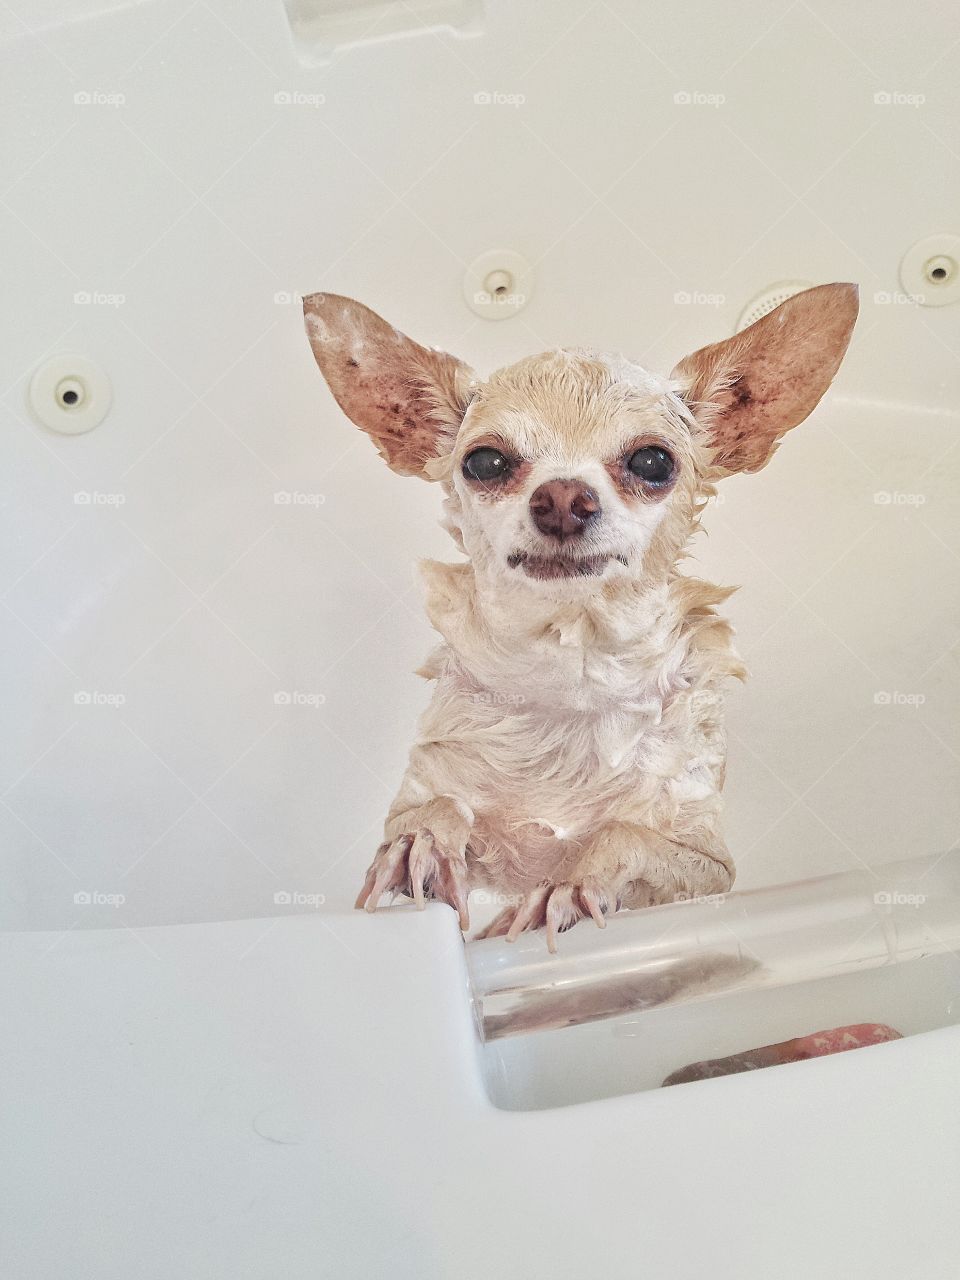 Chihuahua taking a bath